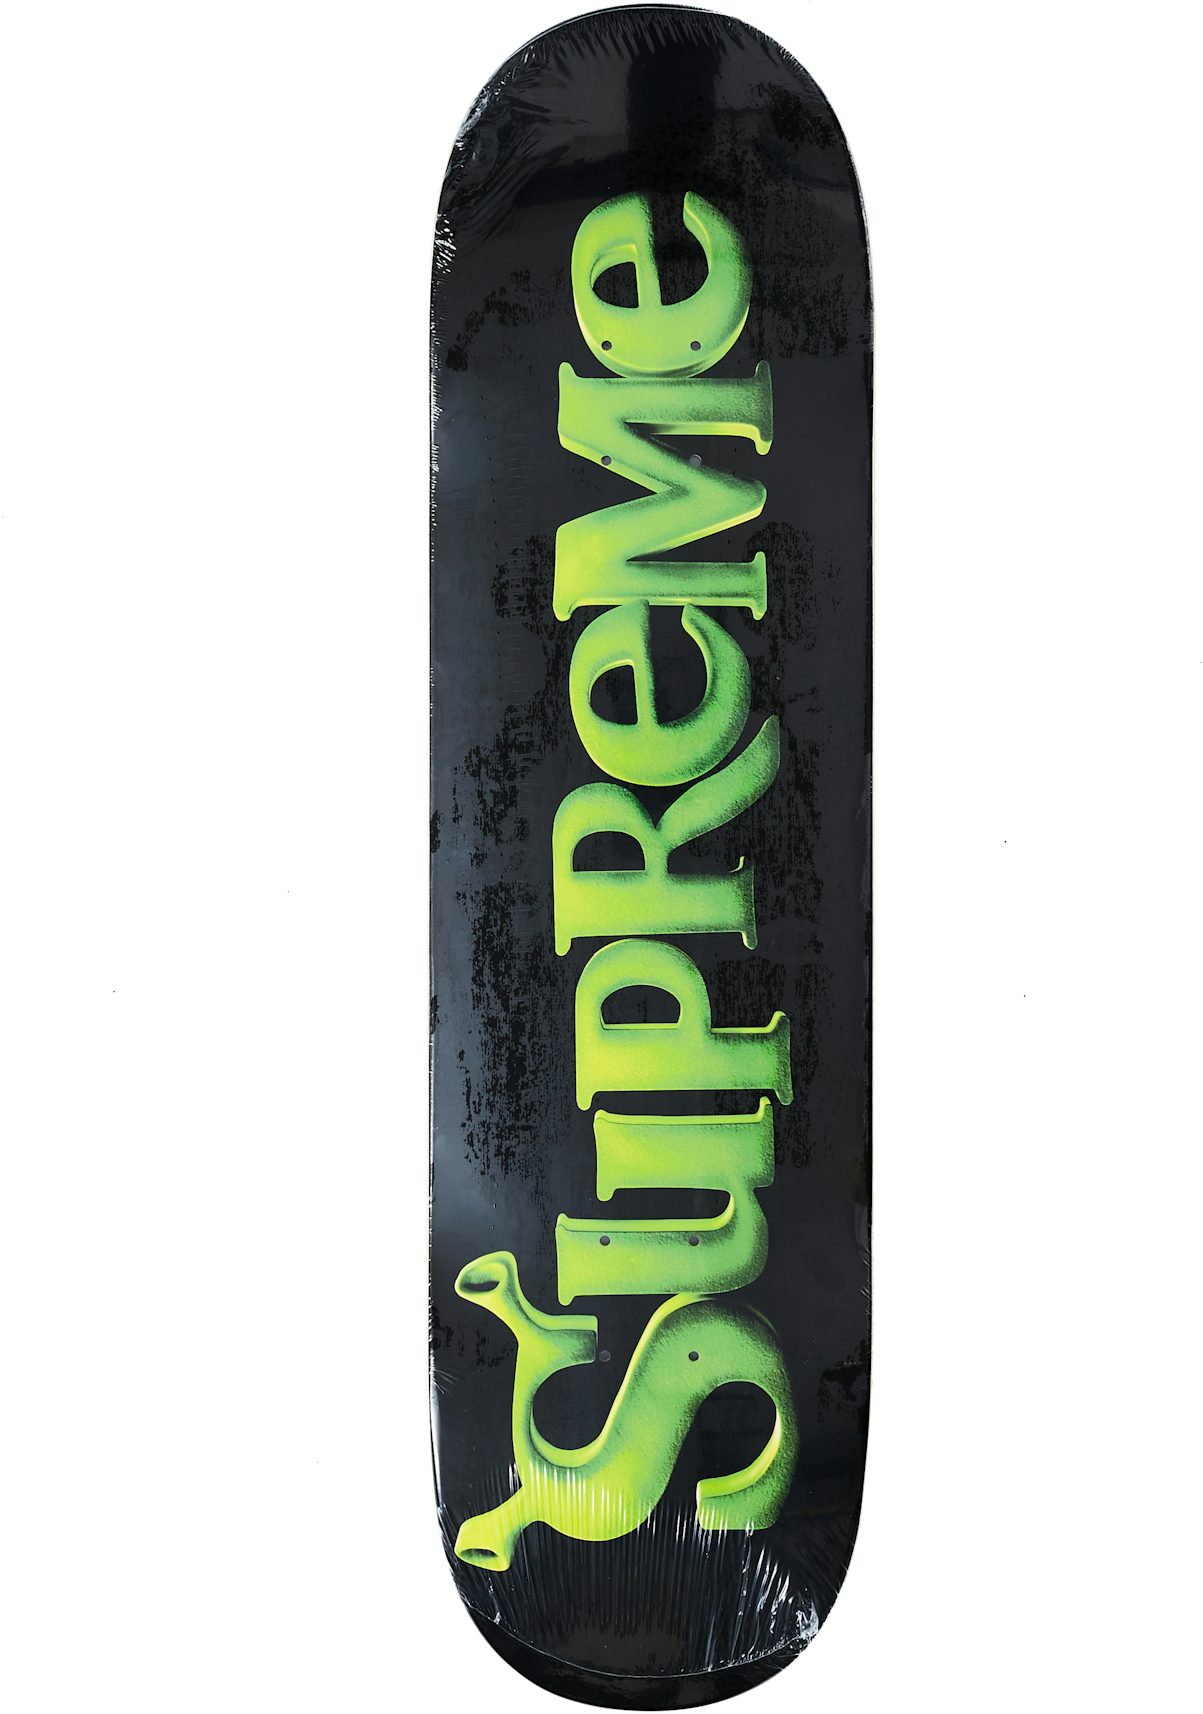 Supreme Celtic Knot Skateboard Deck Set Black/Red/Blue